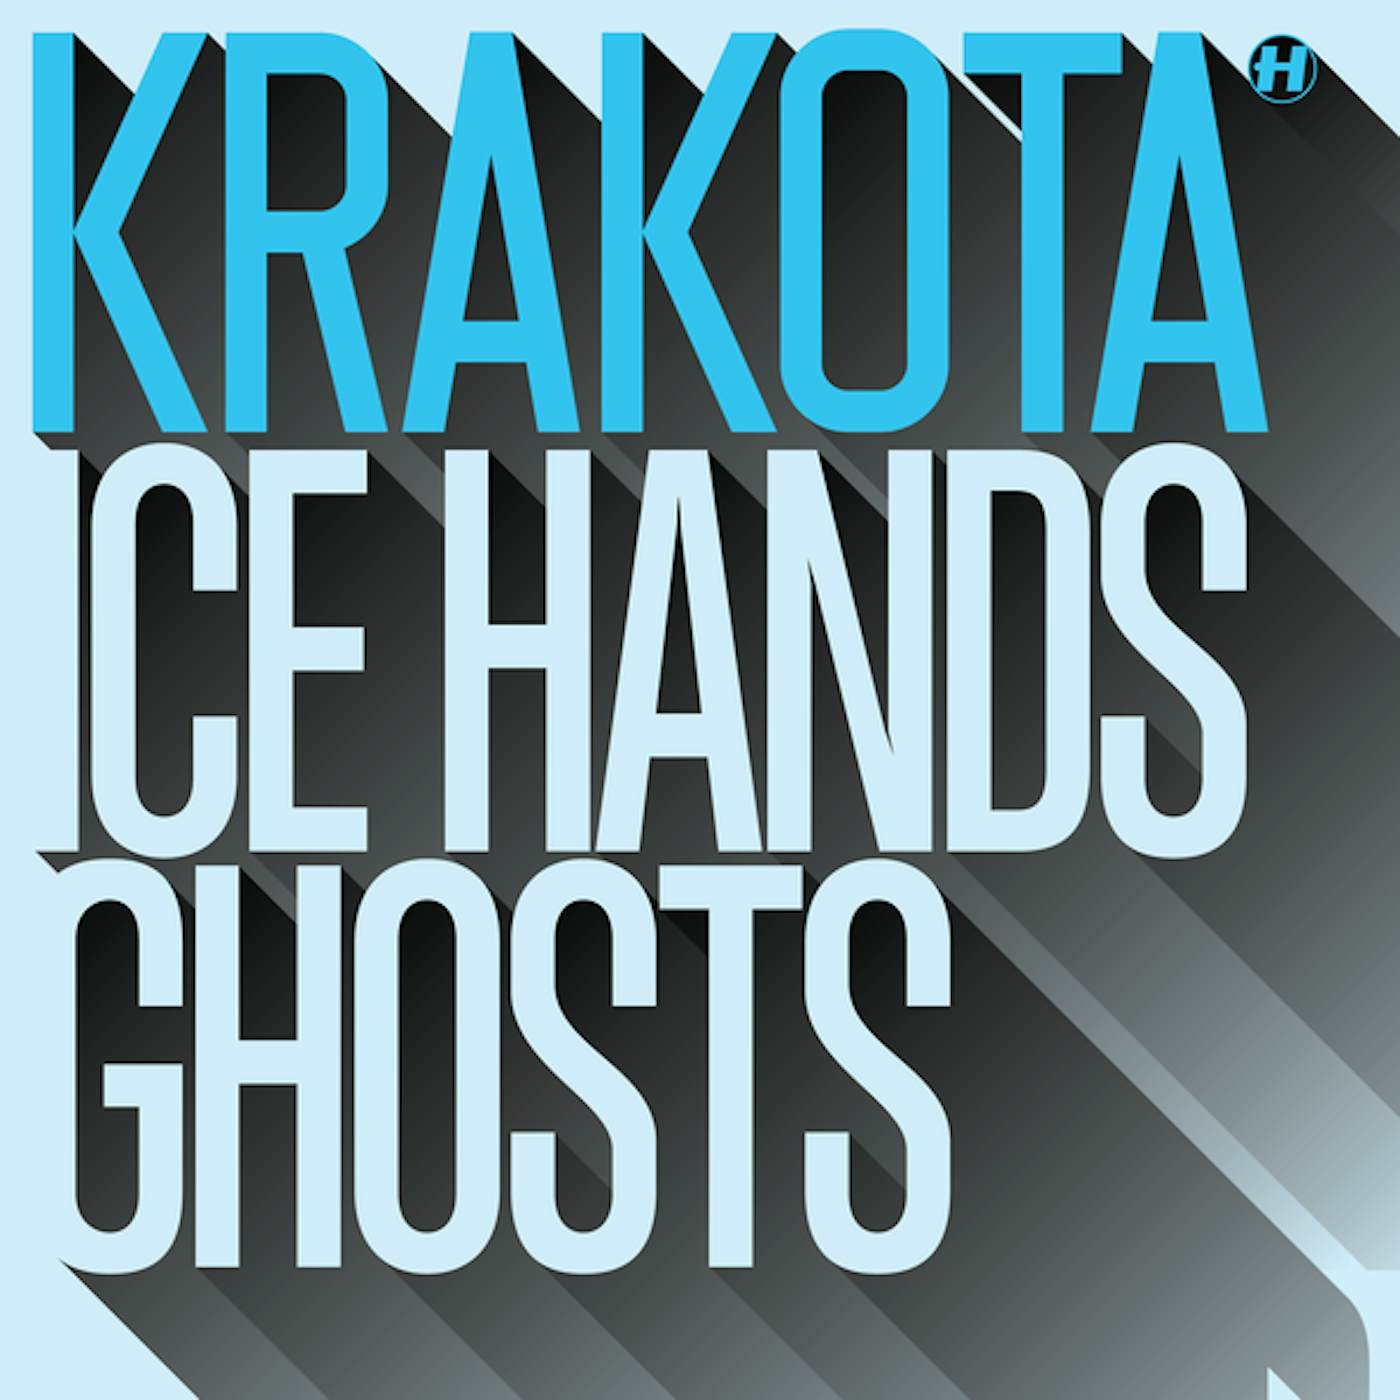 Krakota Ice Hands